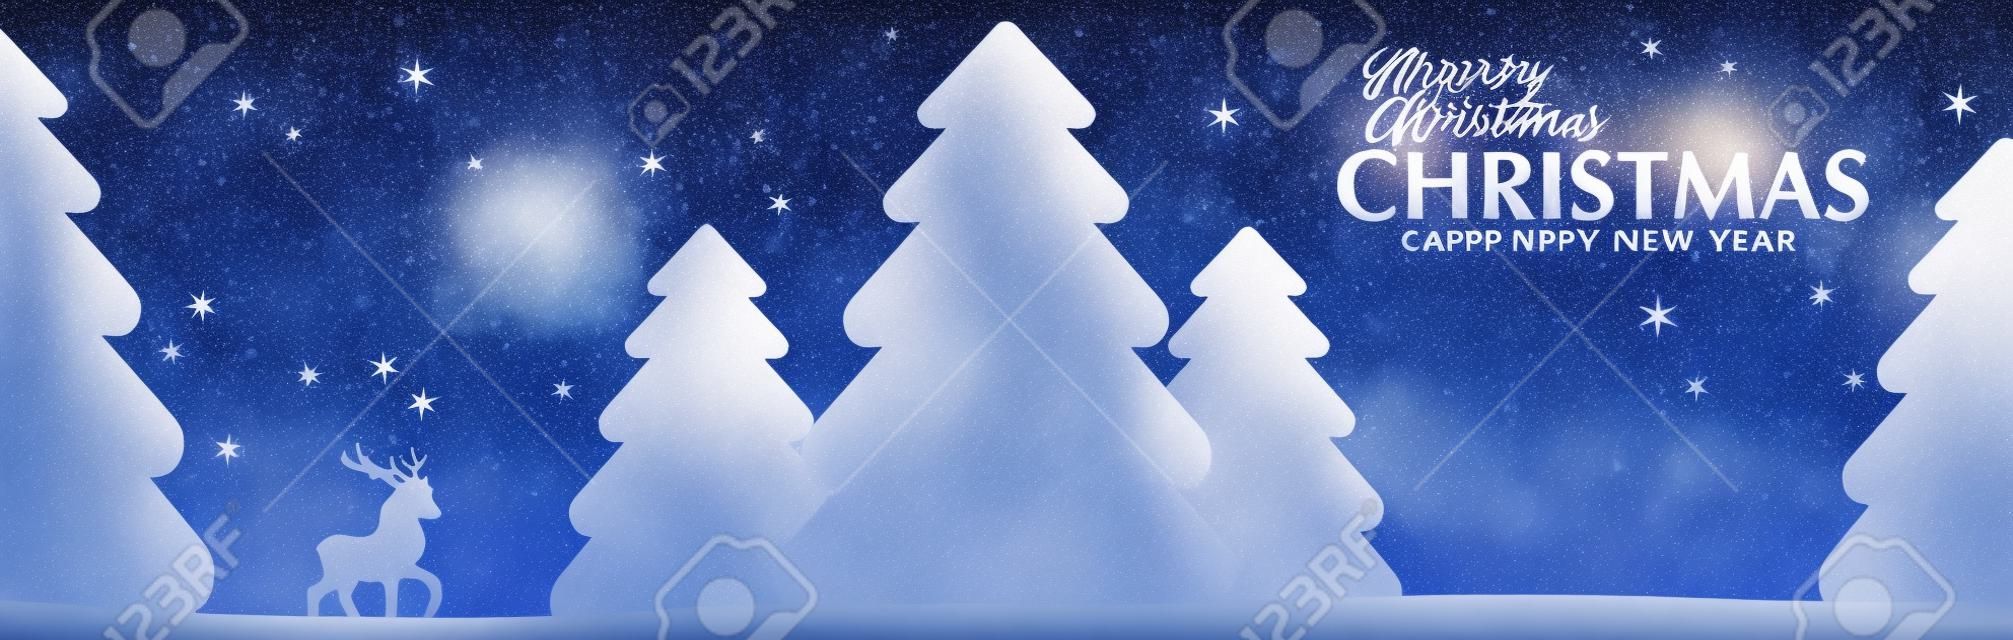 Feliz Natal e feliz ano novo cartão. Paisagem de inverno com árvores, veados e estrelas.